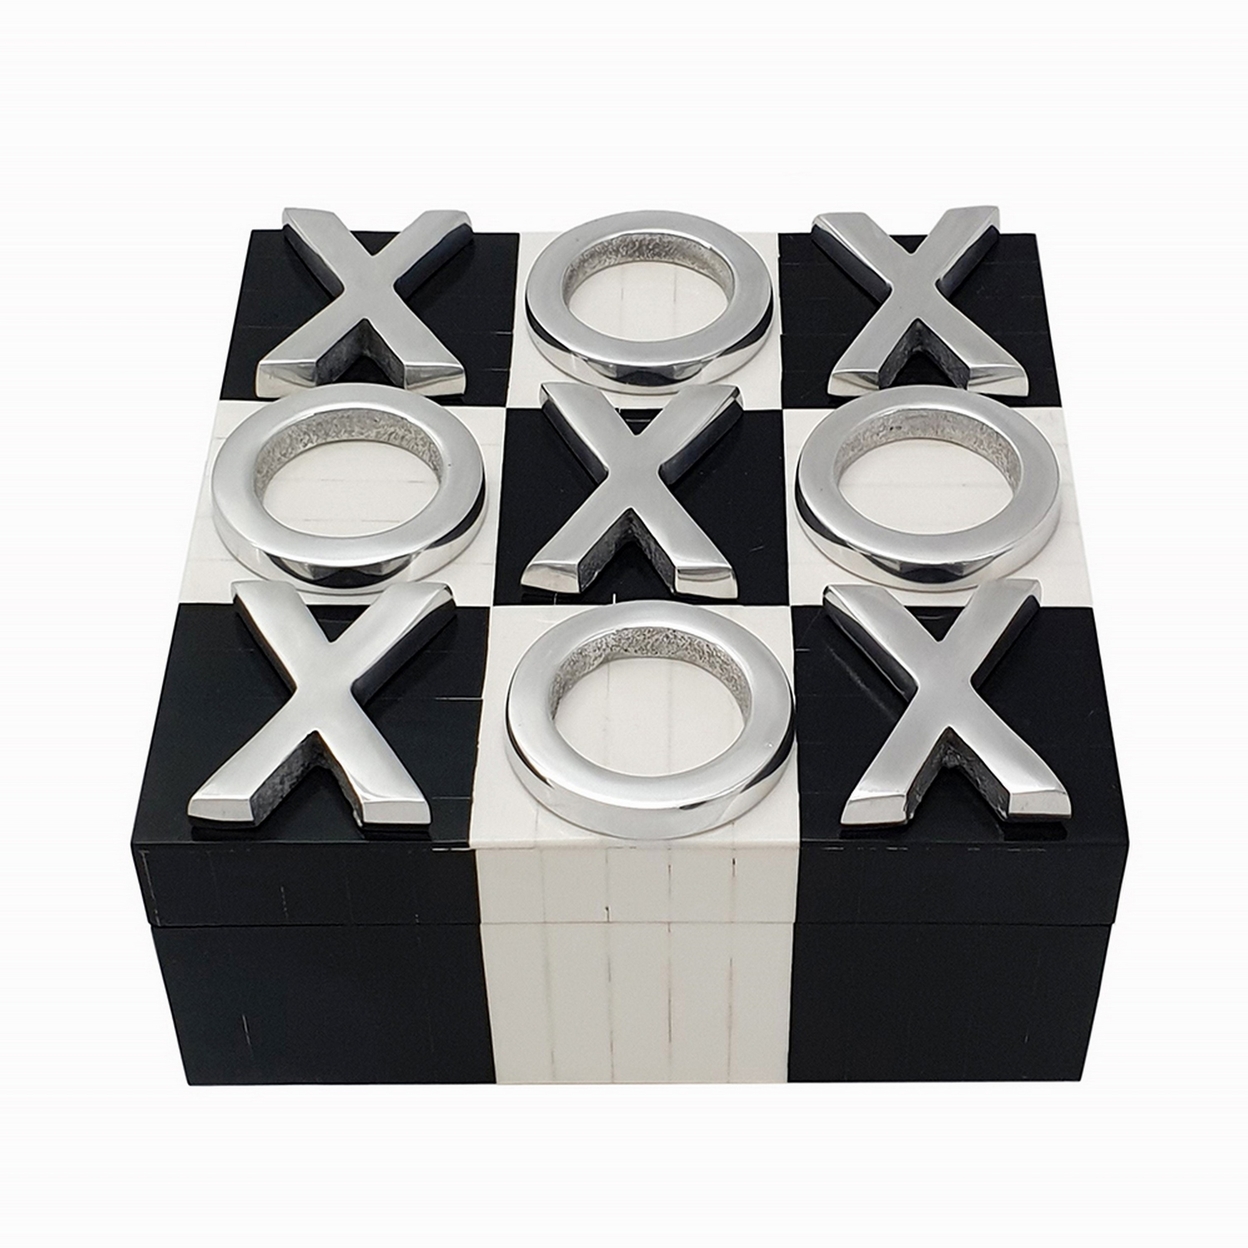 8 Inch Decorative Tic Tac Toe Square Game Box, Silver Pieces, Black, White- Saltoro Sherpi